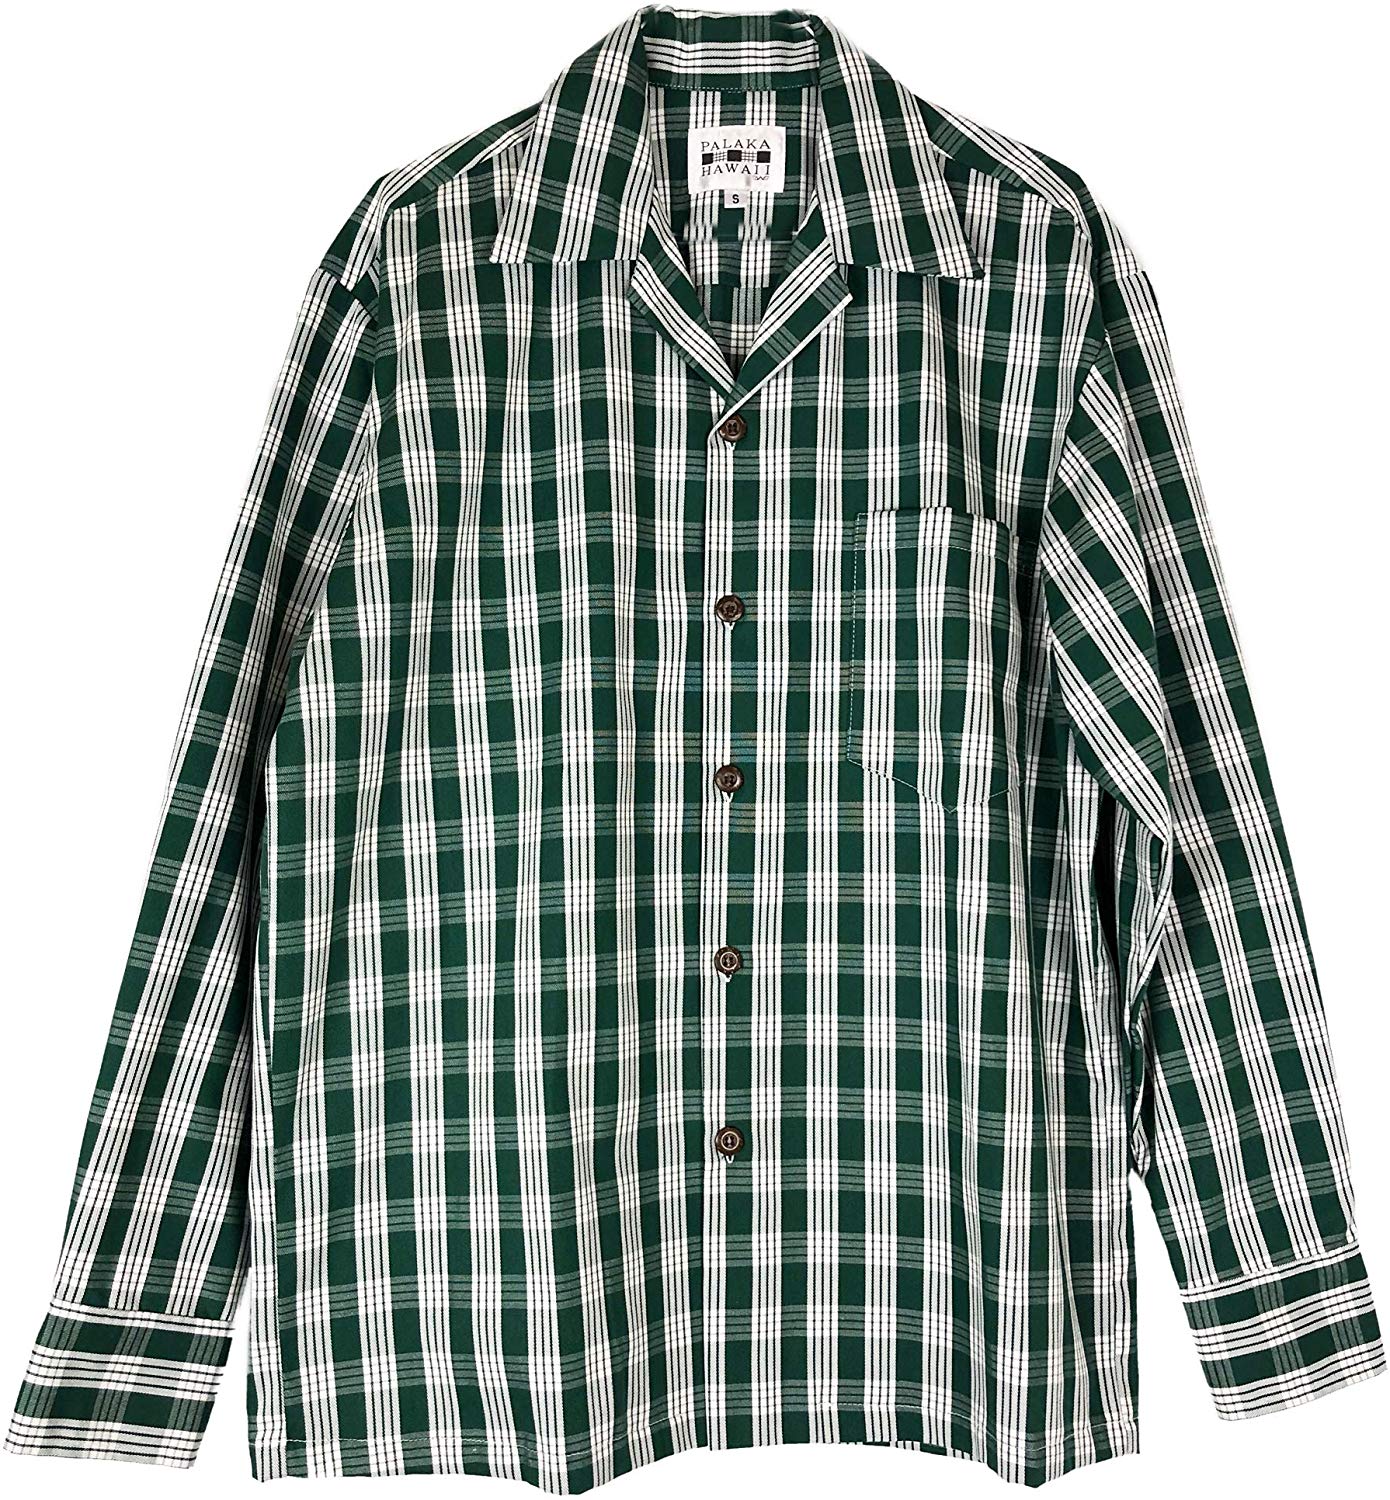 Xswsy XG Mens Fashion Slim Long Sleeve Plaid Checkered Button Down Shirts Tops